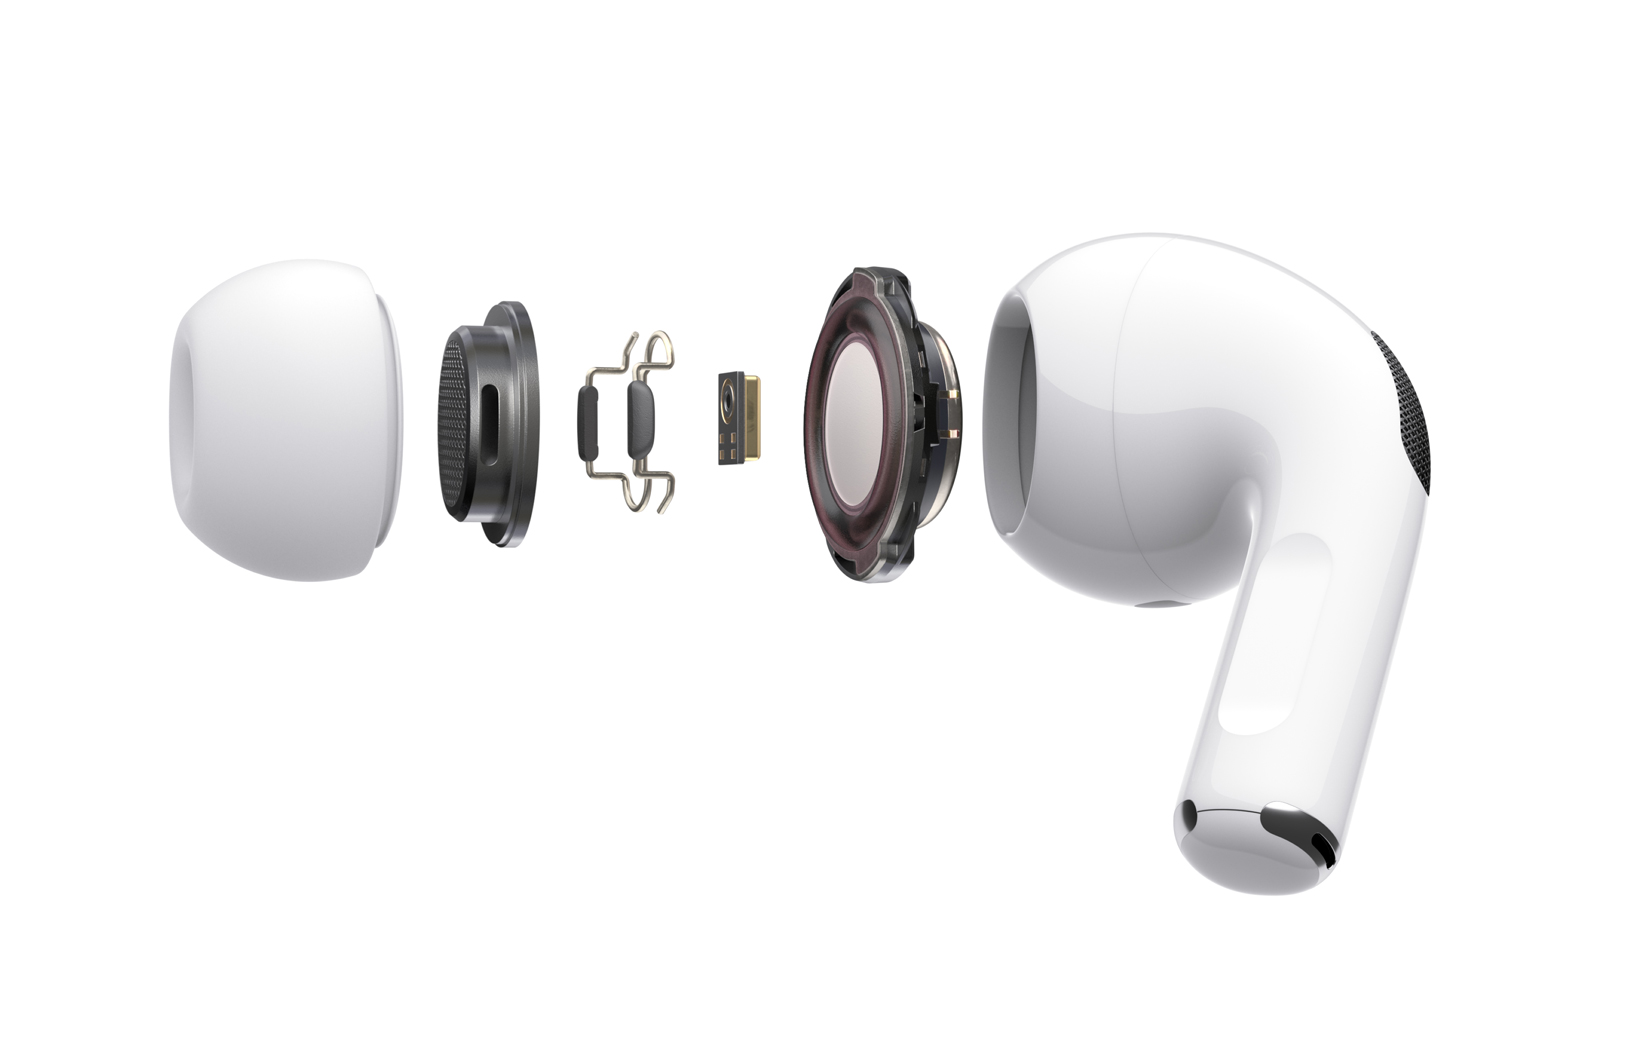 Apple Airpods Pro chính thức: thiết kế in-ear mới, chống ồn chủ động, giá 249USD